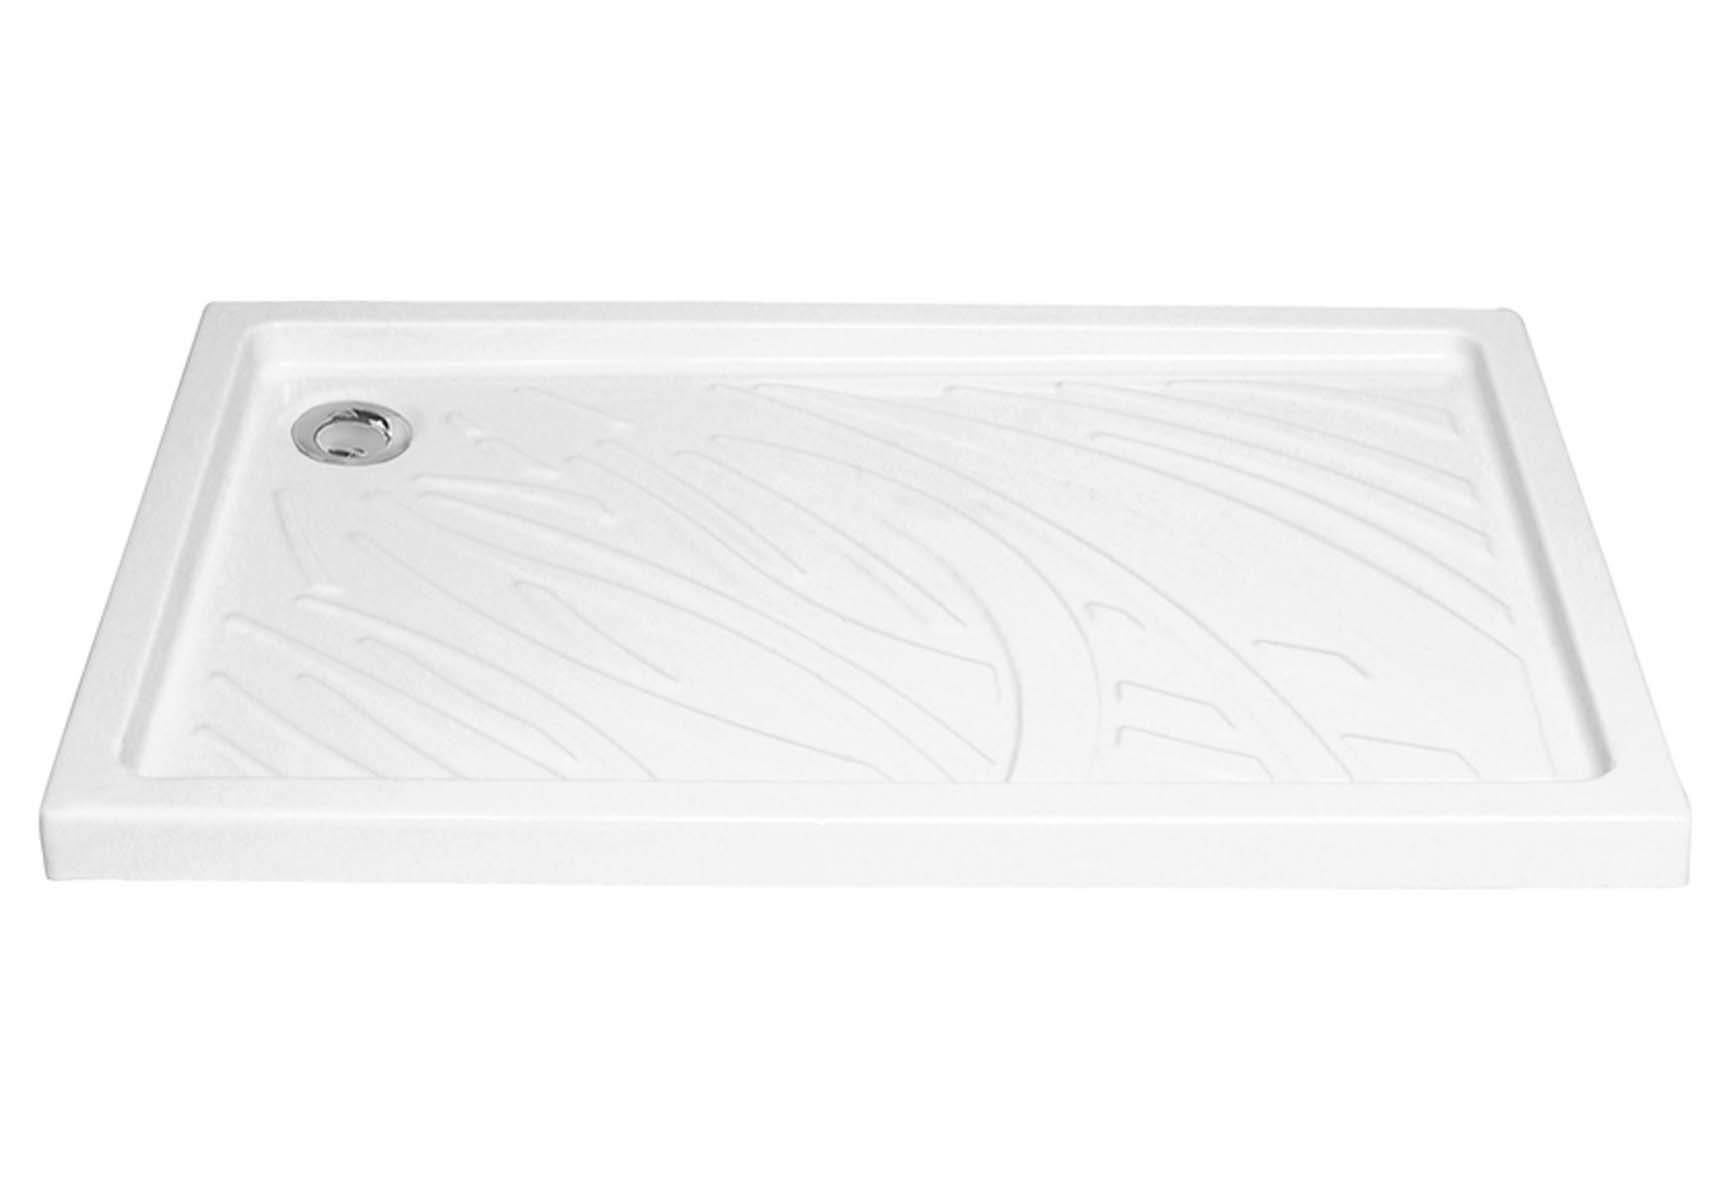 Arkitekt Rectangular Shower Tray, 120cm